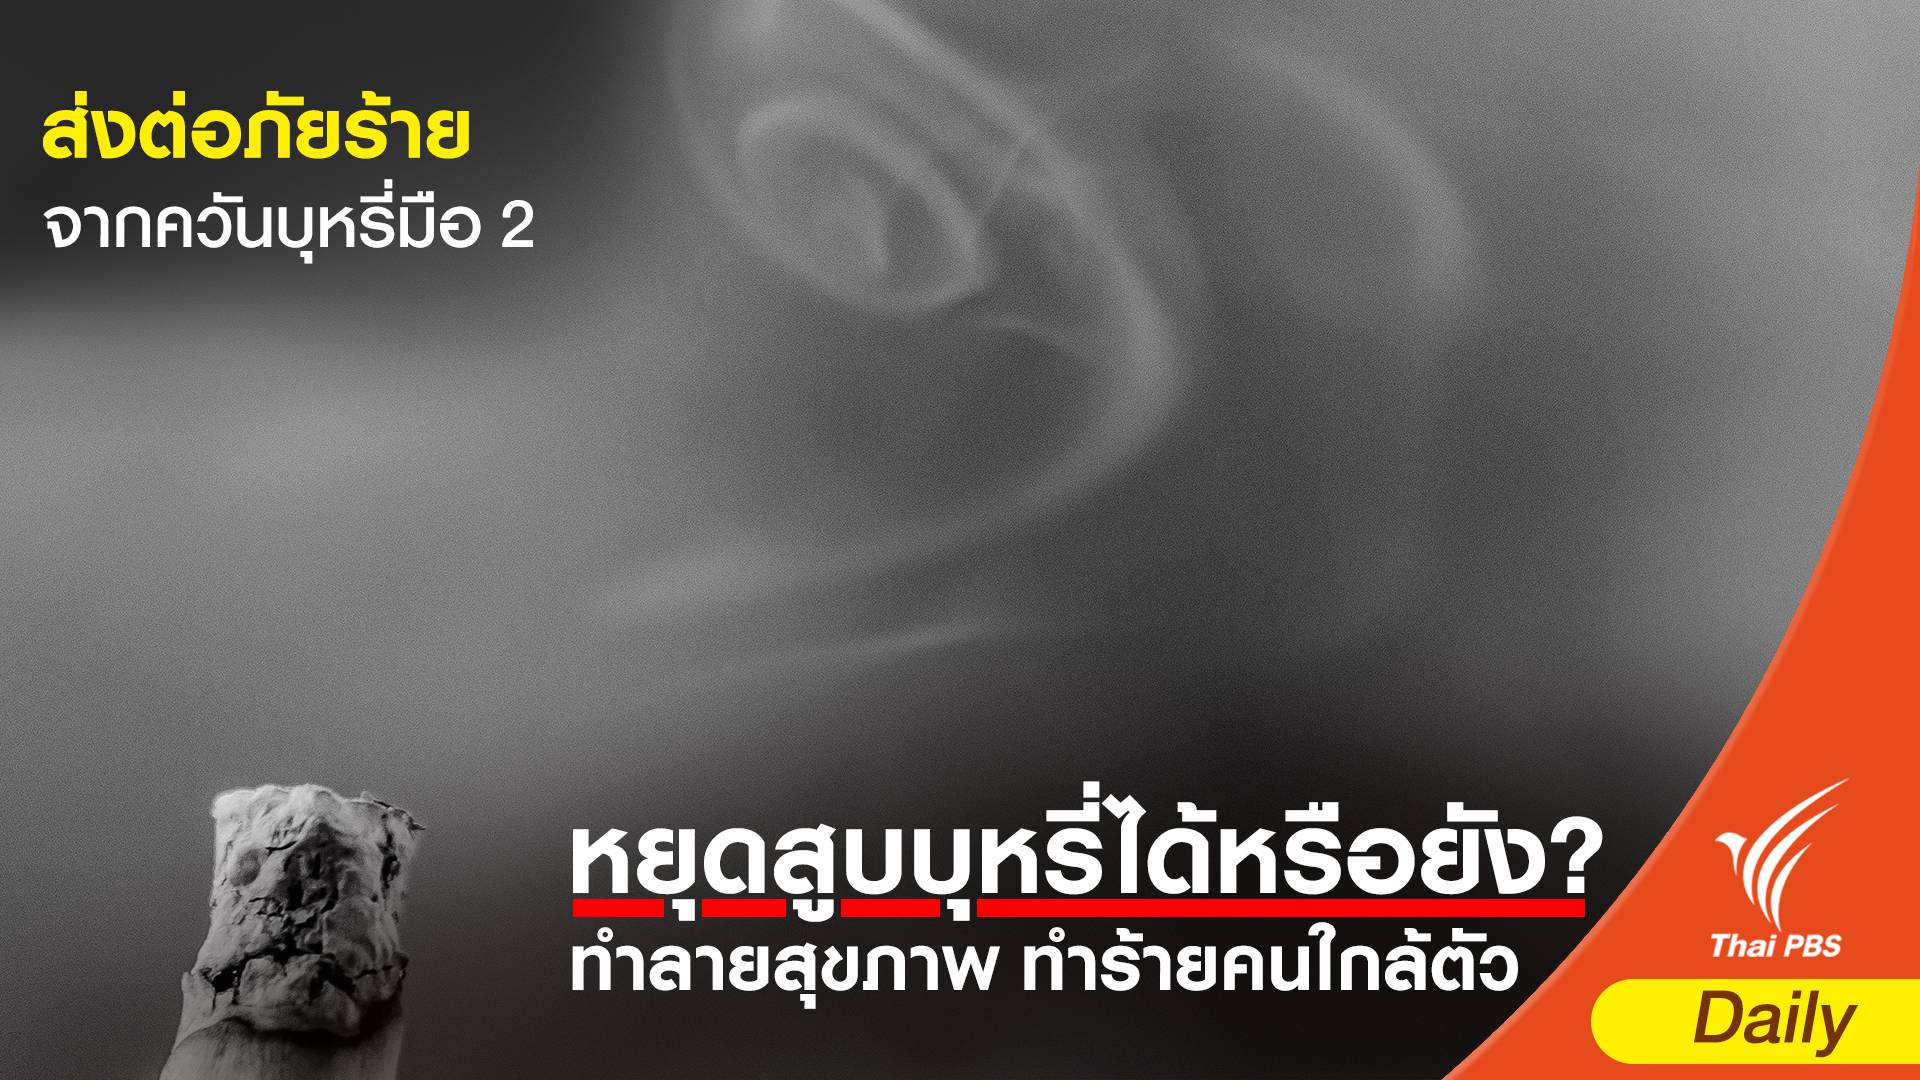 คนไทยกว่า 17 ล้านคน ถูกส่งต่อภัยร้ายจากควันบุหรี่มือ 2